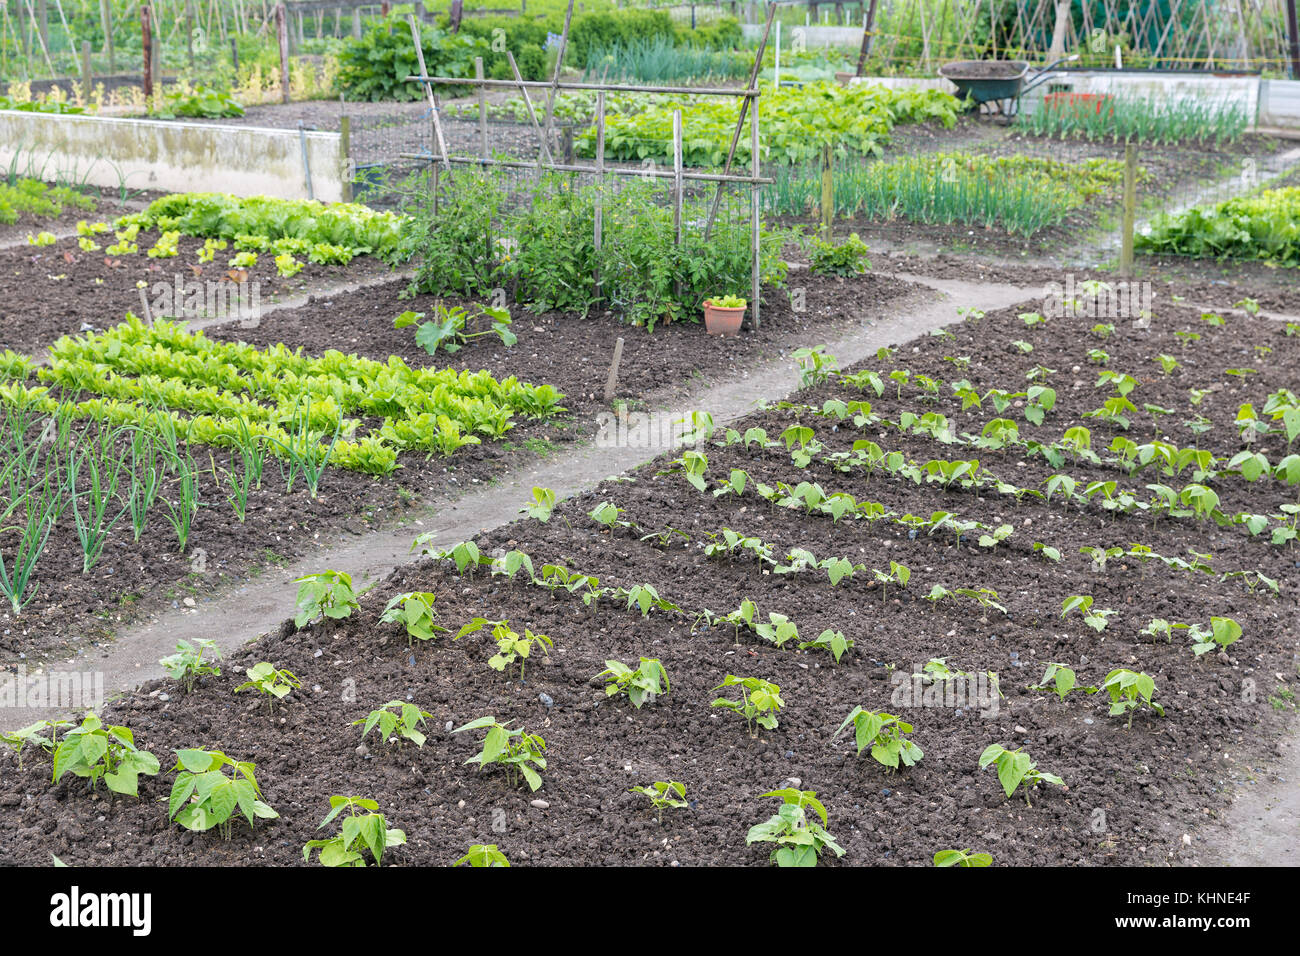 Spécial jardin au printemps avec pommes de terre et oignons Banque D'Images